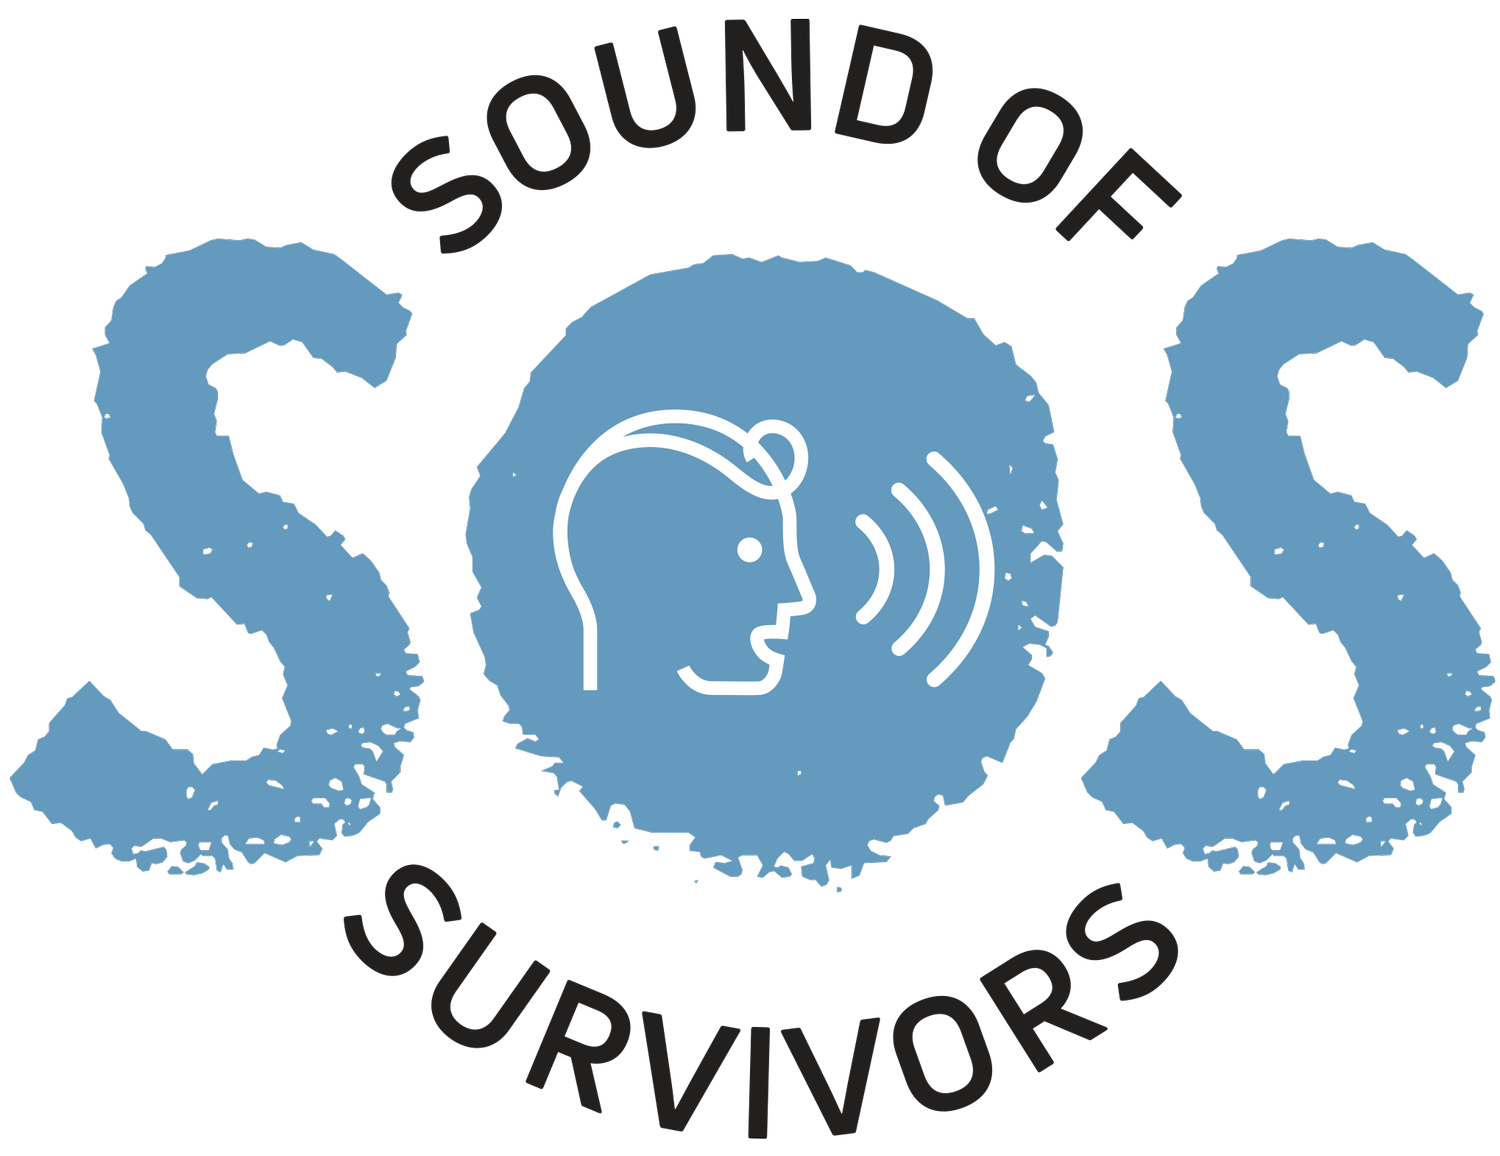 Sound Of Survivors